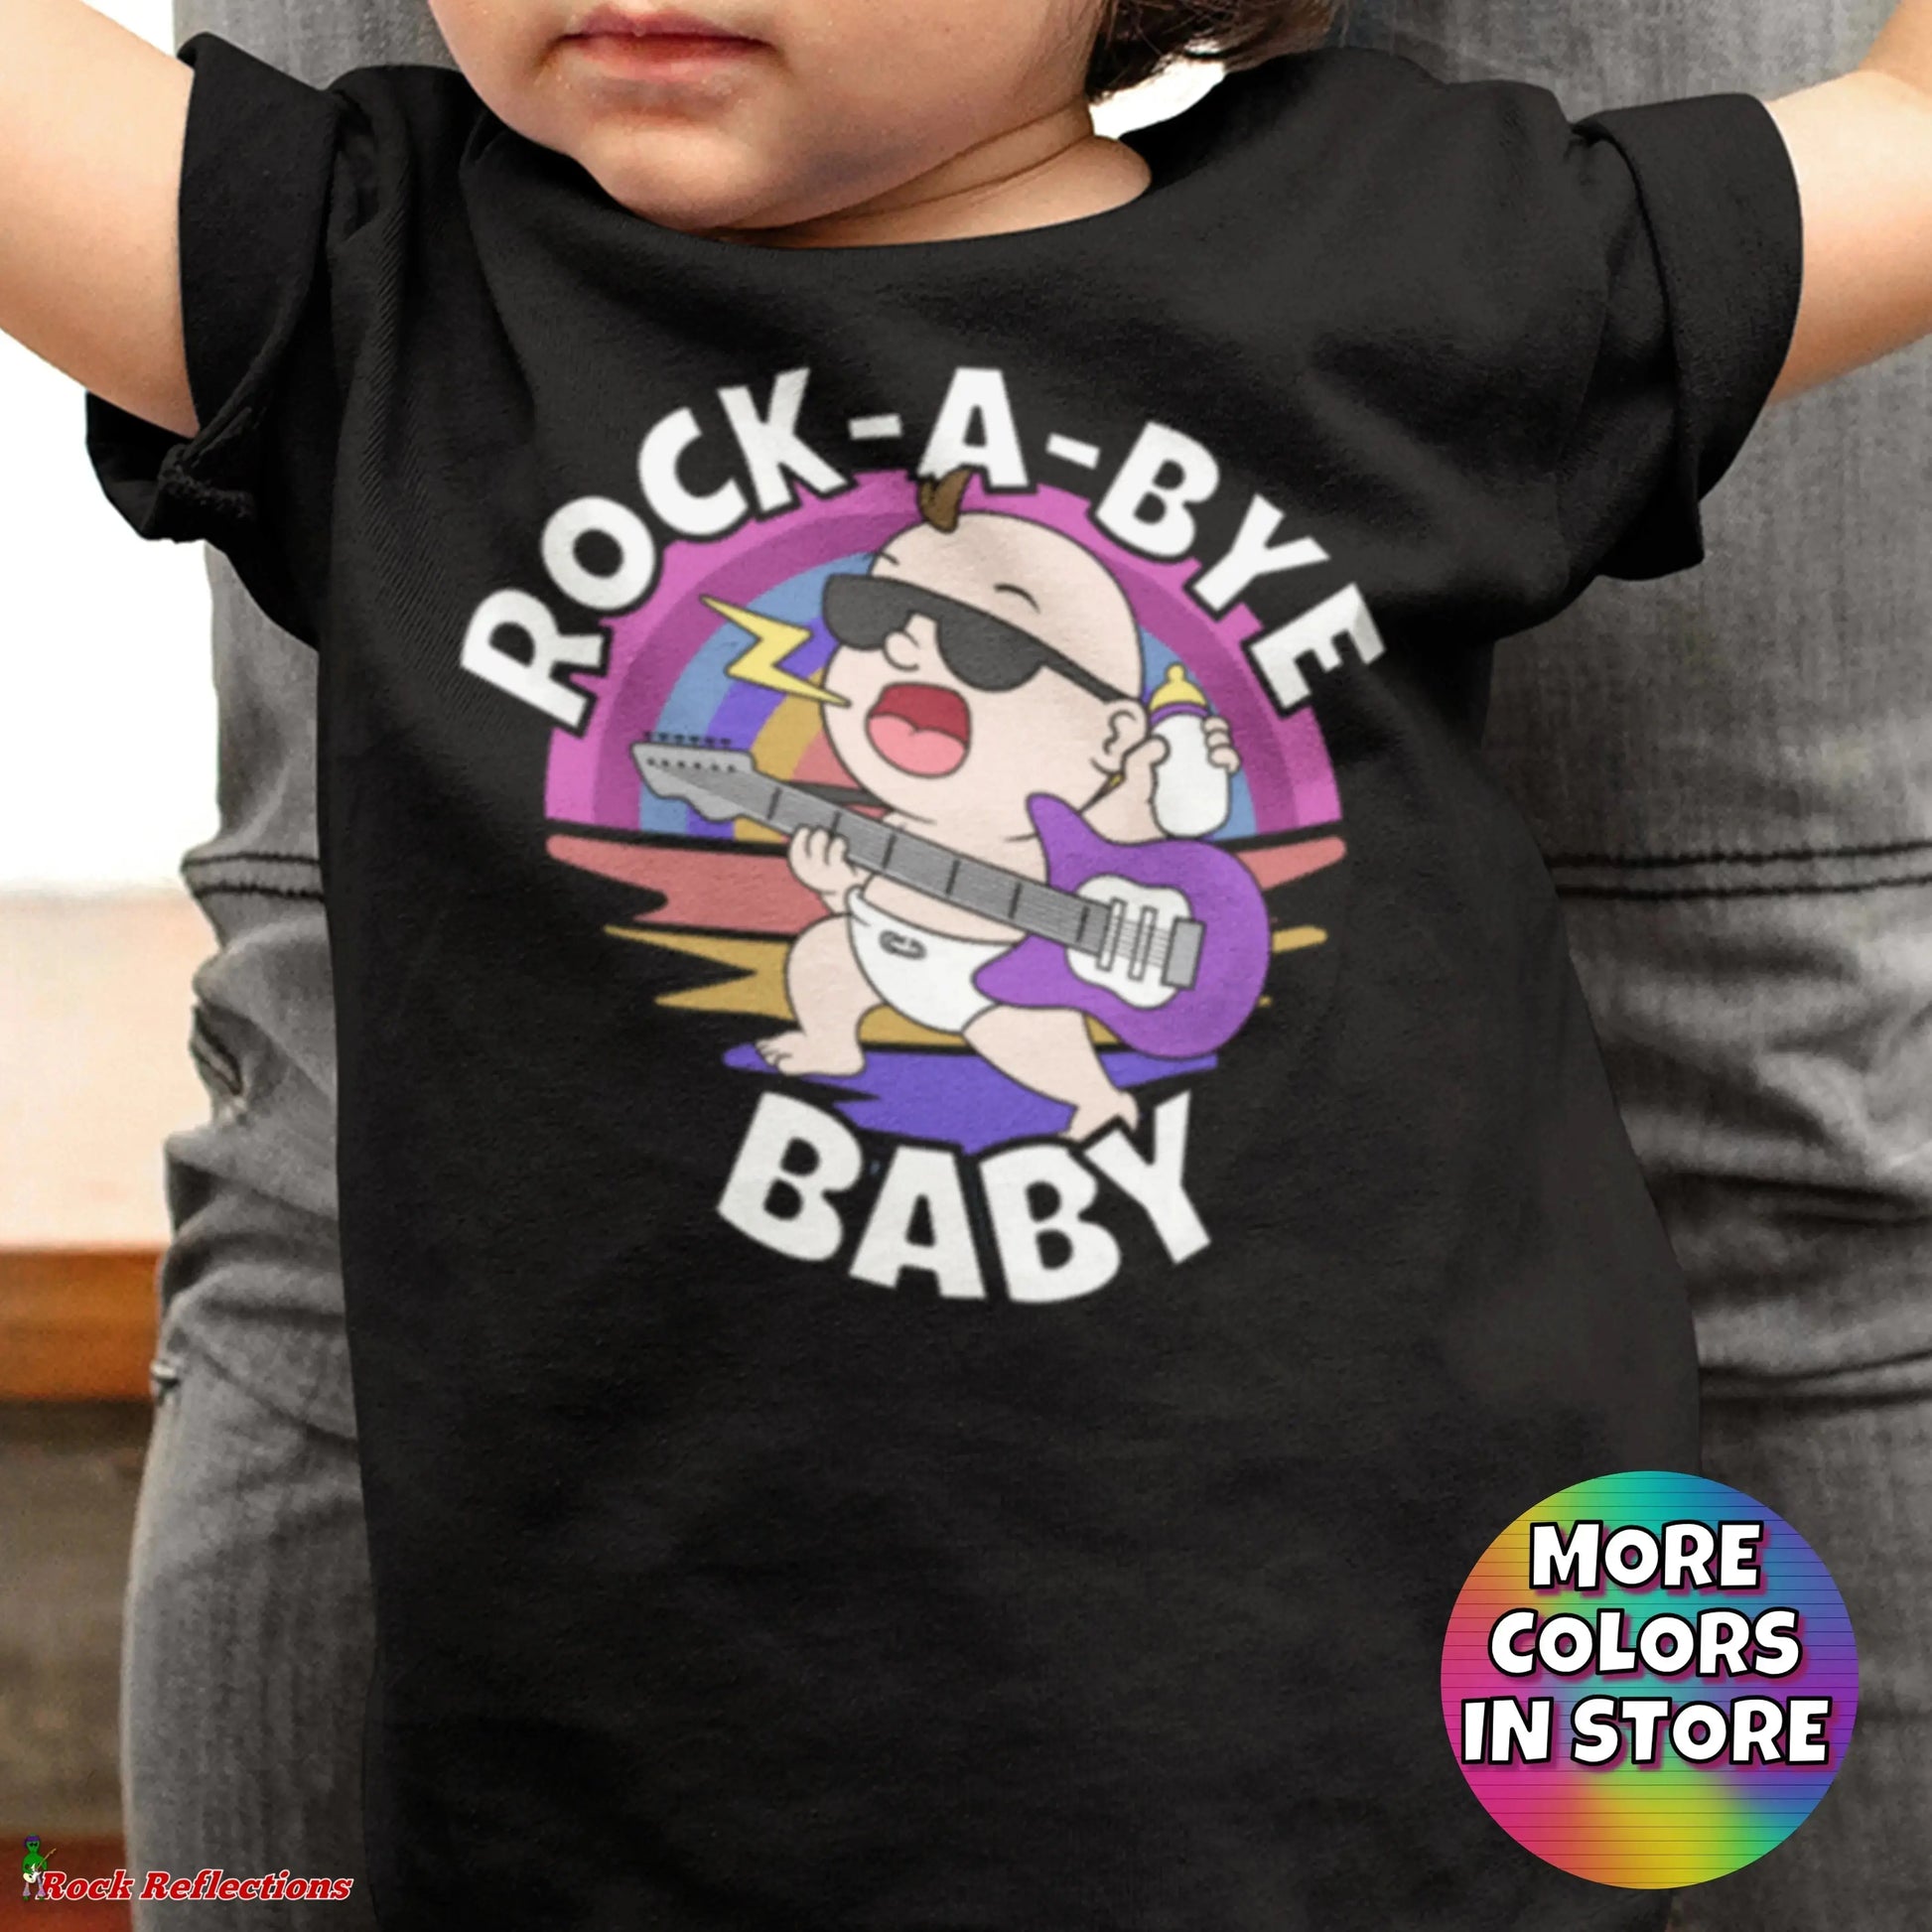 Rock-A-Bye Baby SPOD